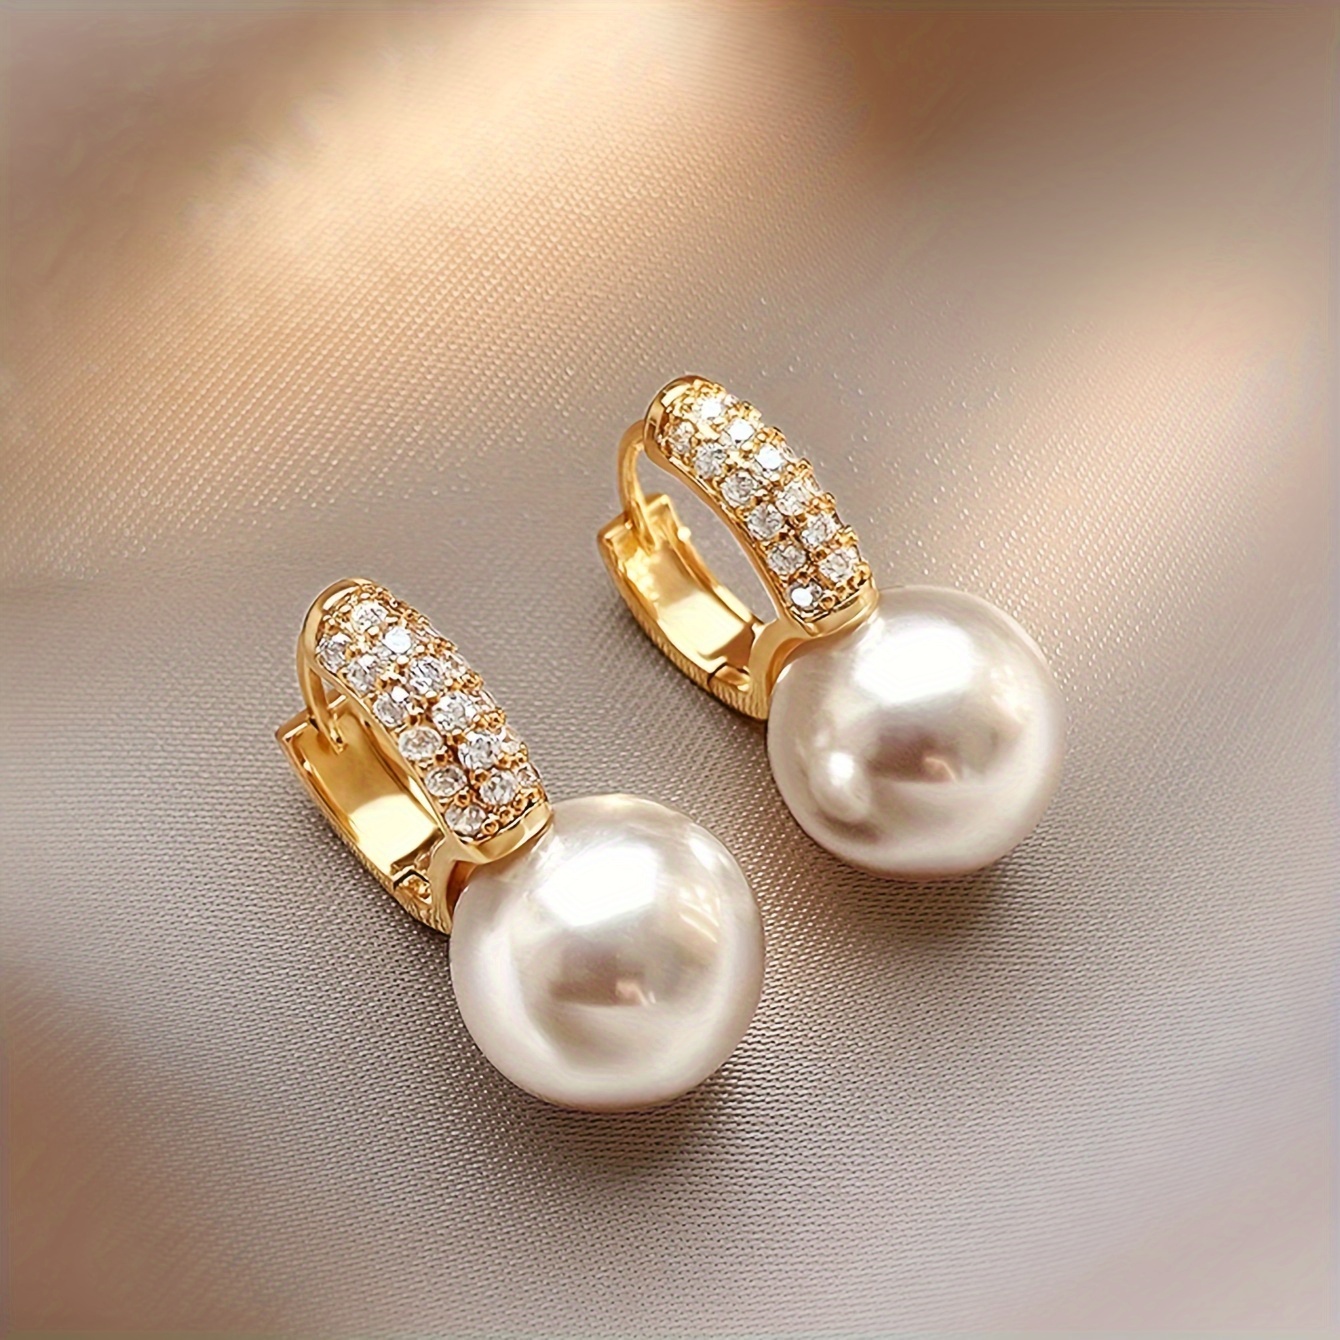 

1 Pair Women's Elegant Earrings, Vintage & Minimalist Style, Faux Pearl & Rhinestone Studded, Fashion Ear Jewelry